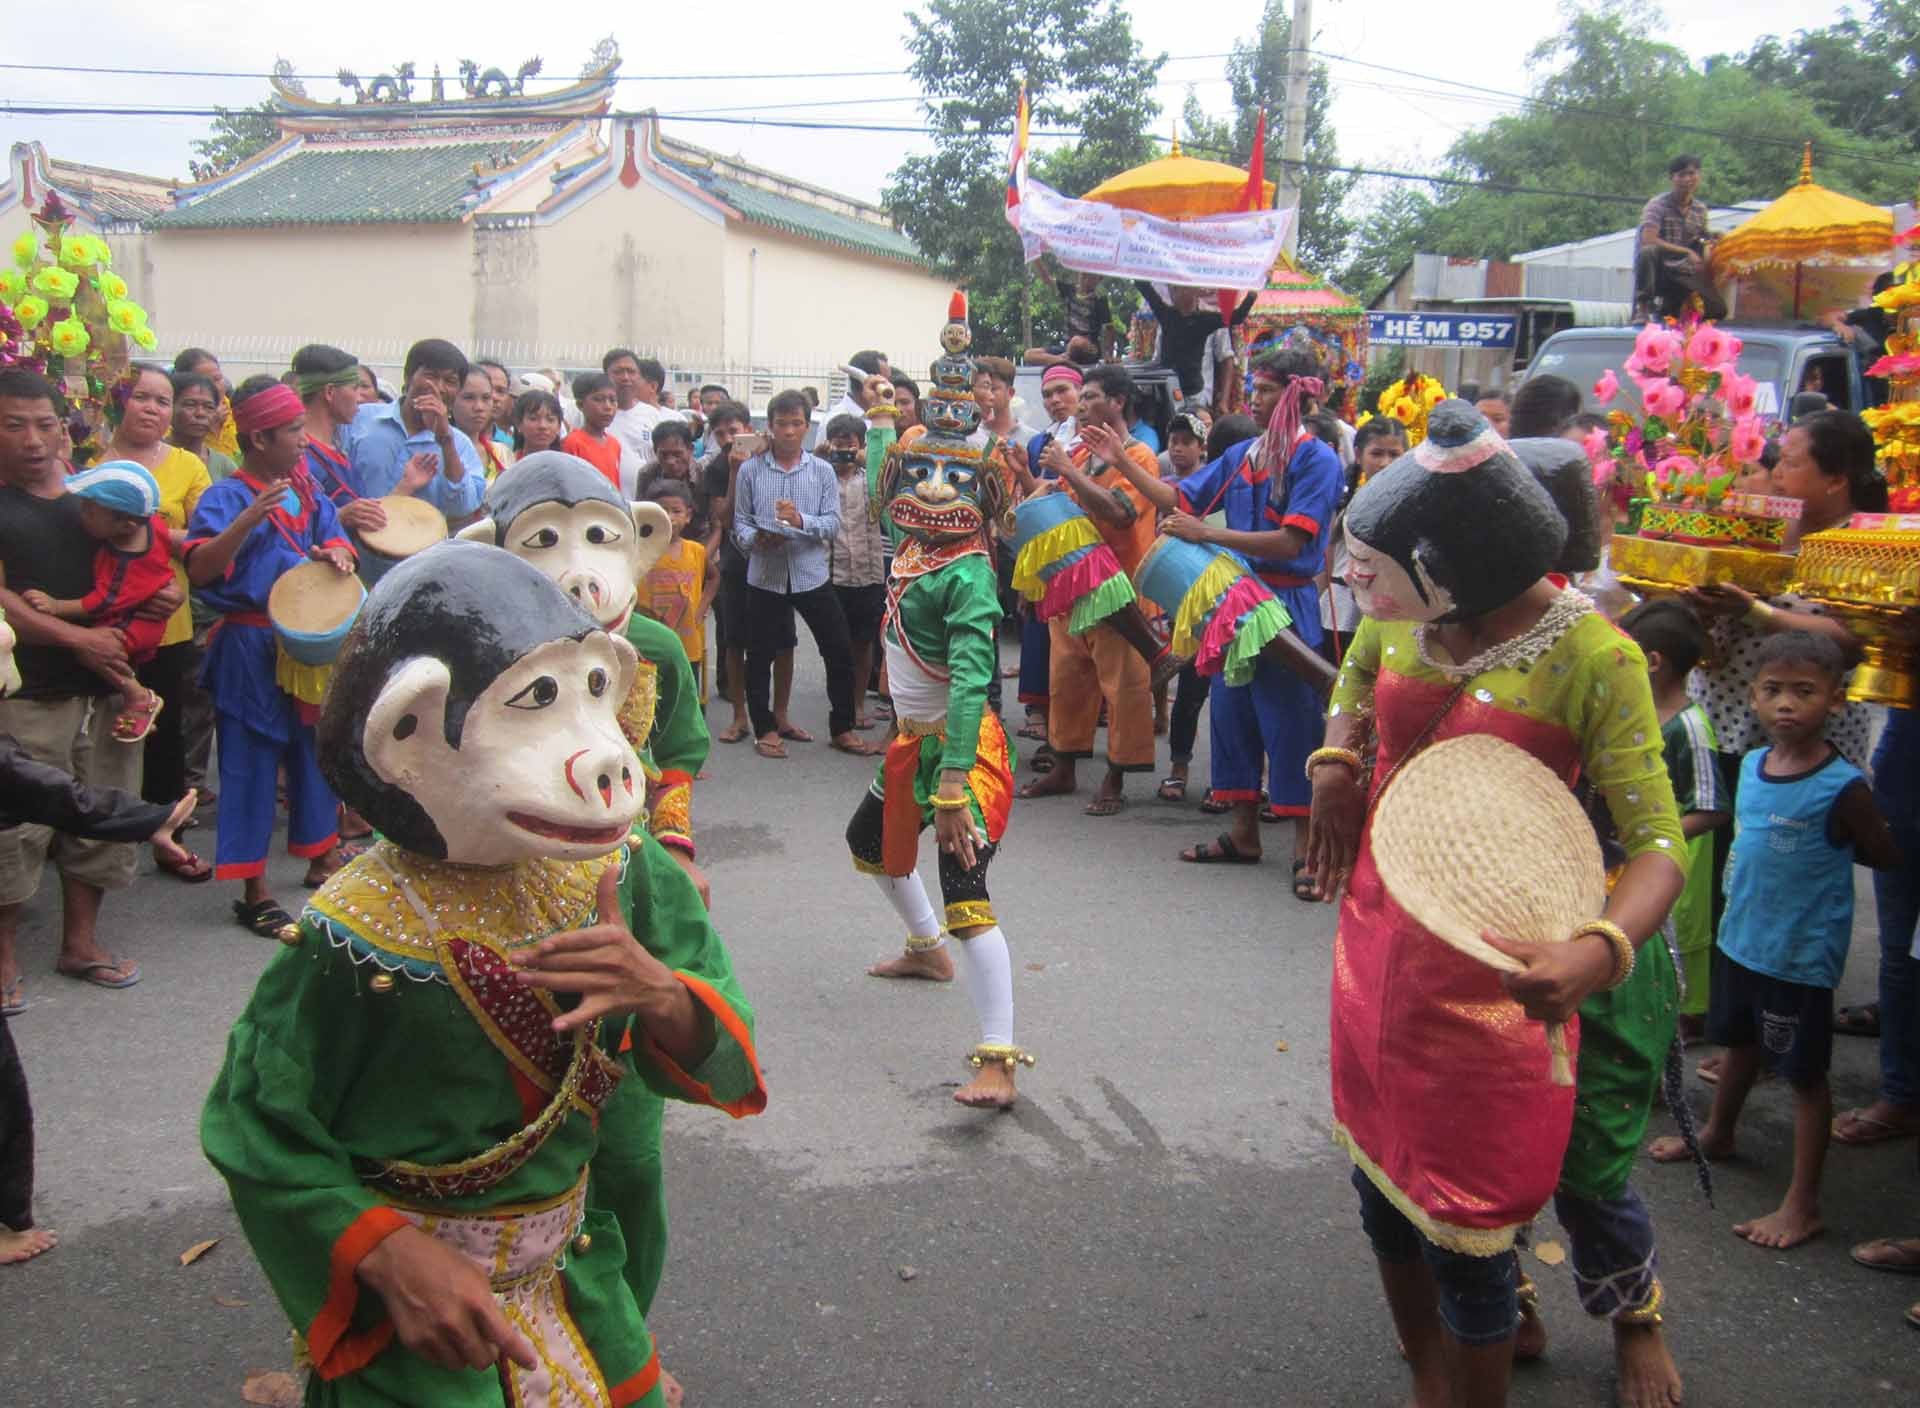 Câu lạc bộ múa hát Khmer chùa Padumavansa Kompong Thmo (Chùa Lò Gạch) ấp Ba Se A, xã Lương Hoà, huyện Châu Thành, tỉnh Trà Vinh) biểu diễn múa chằn, khỉ mừng Lễ hội Kathina của đồng bào Khmer. (Ảnh: Phương Nghi)